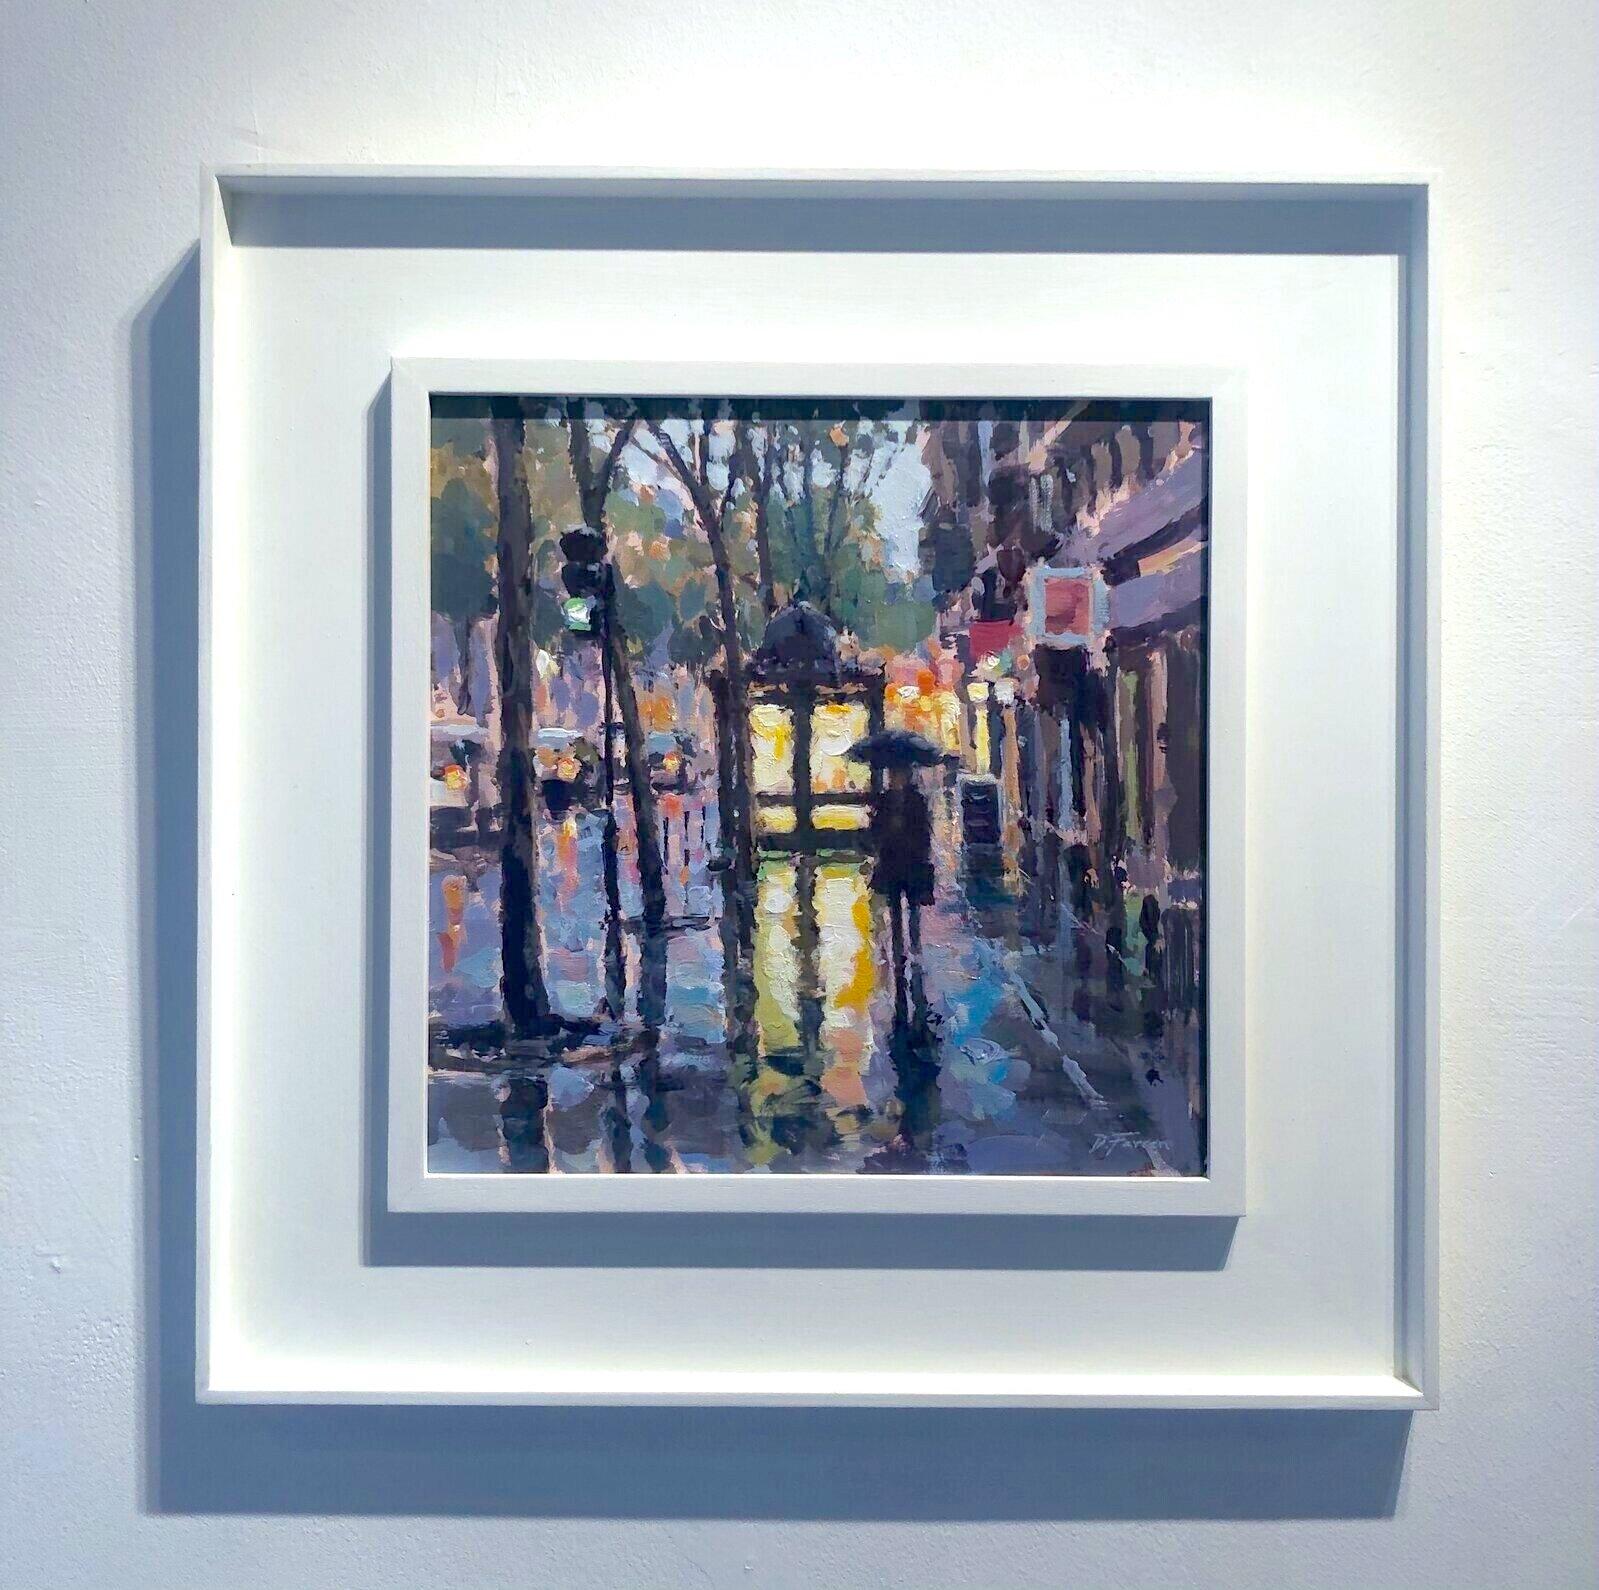 News Stand Reflections Paris-original impressionnisme paysage urbain peinture d'art - Impressionnisme Painting par David Farren